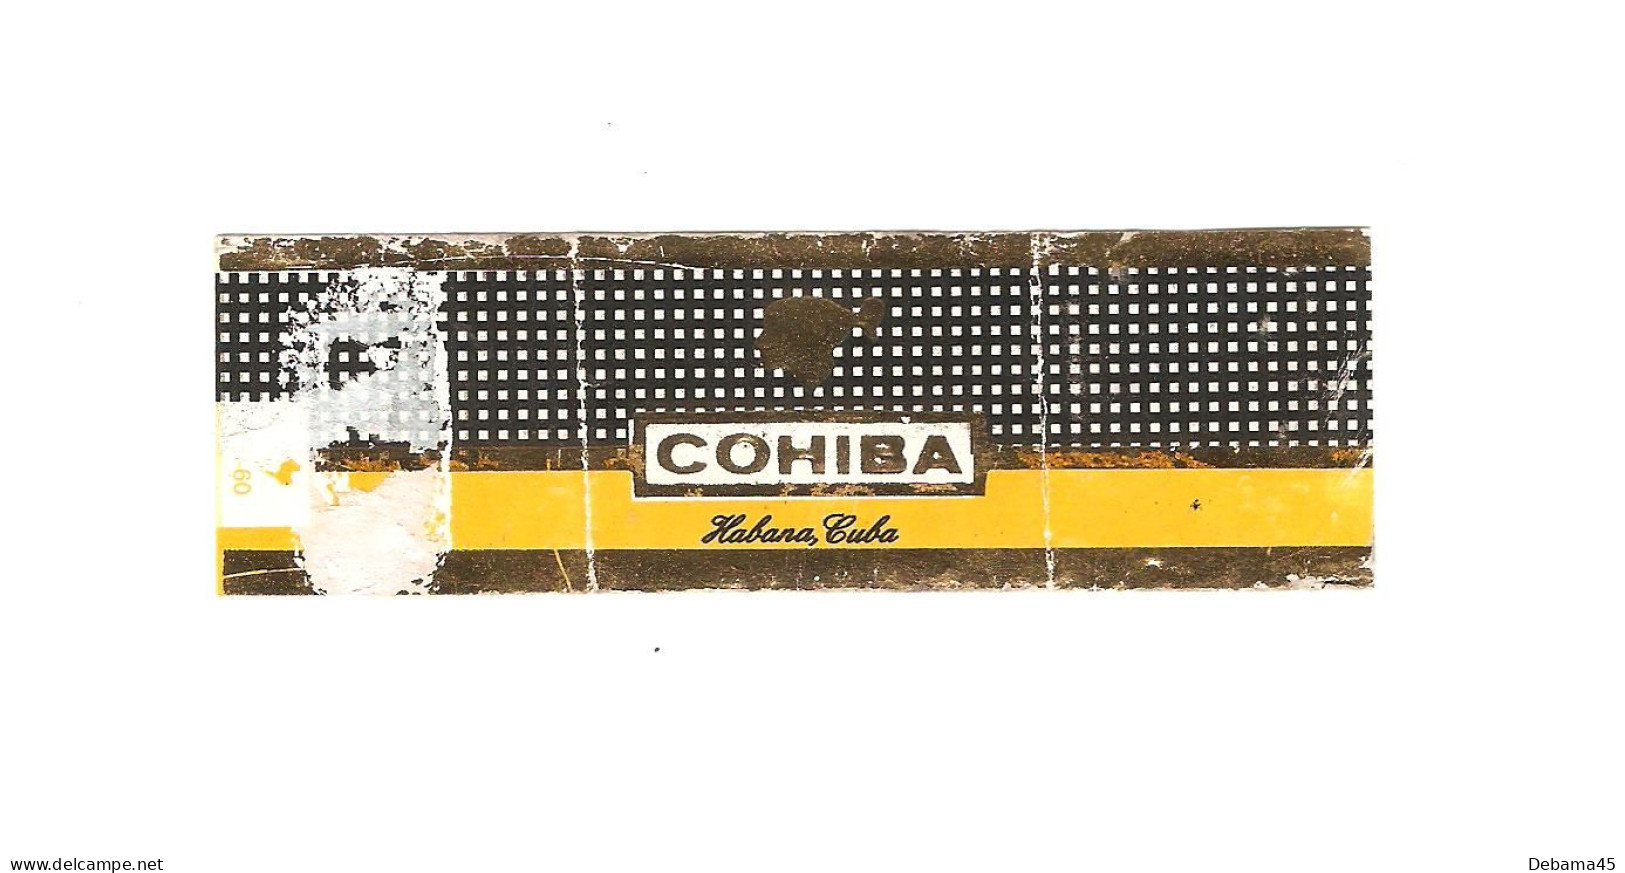 620/ Bague De Cigare : CUBA : Cohiba : Habana Cuba - Cigar Bands